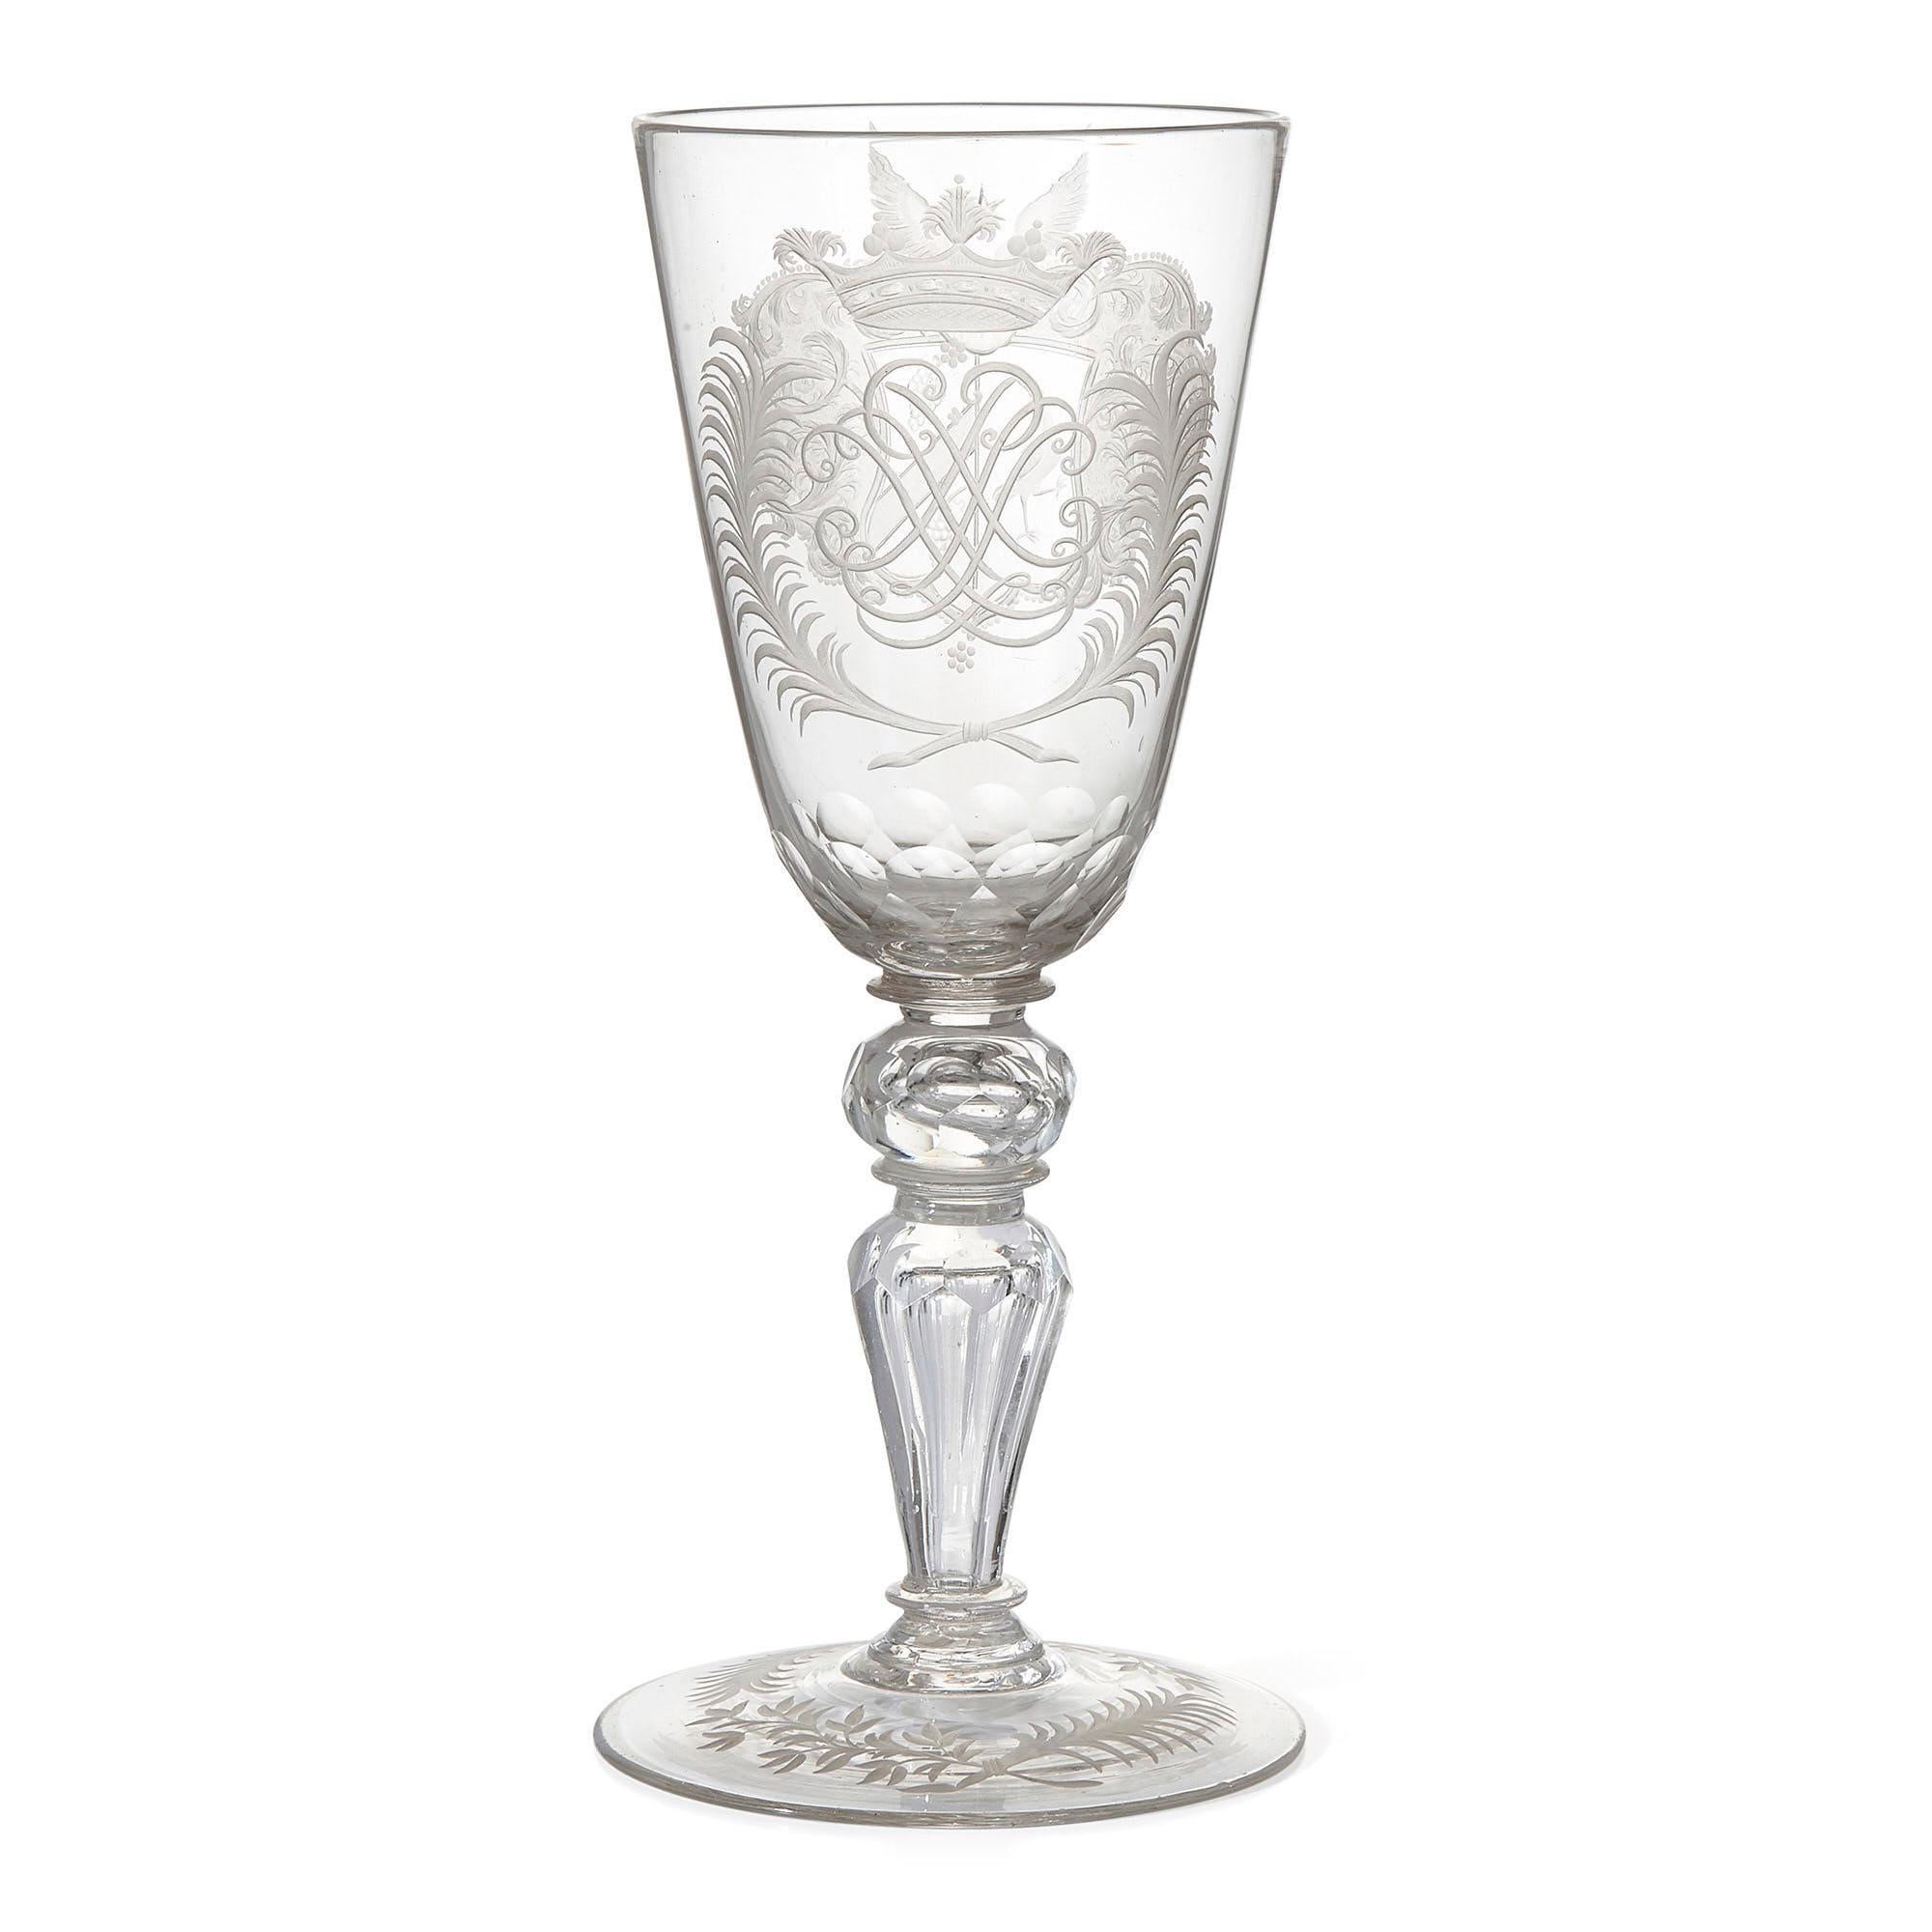 Gobelet en verre antique du 18e siècle avec gravure de Thuringe
Allemand, vers 1740
Dimensions : Hauteur 29cm, diamètre 12.5cm

Fabriqué en Allemagne vers 1740, ce gobelet en verre antique est un bel exemple de la verrerie de Thuringe du XVIIIe